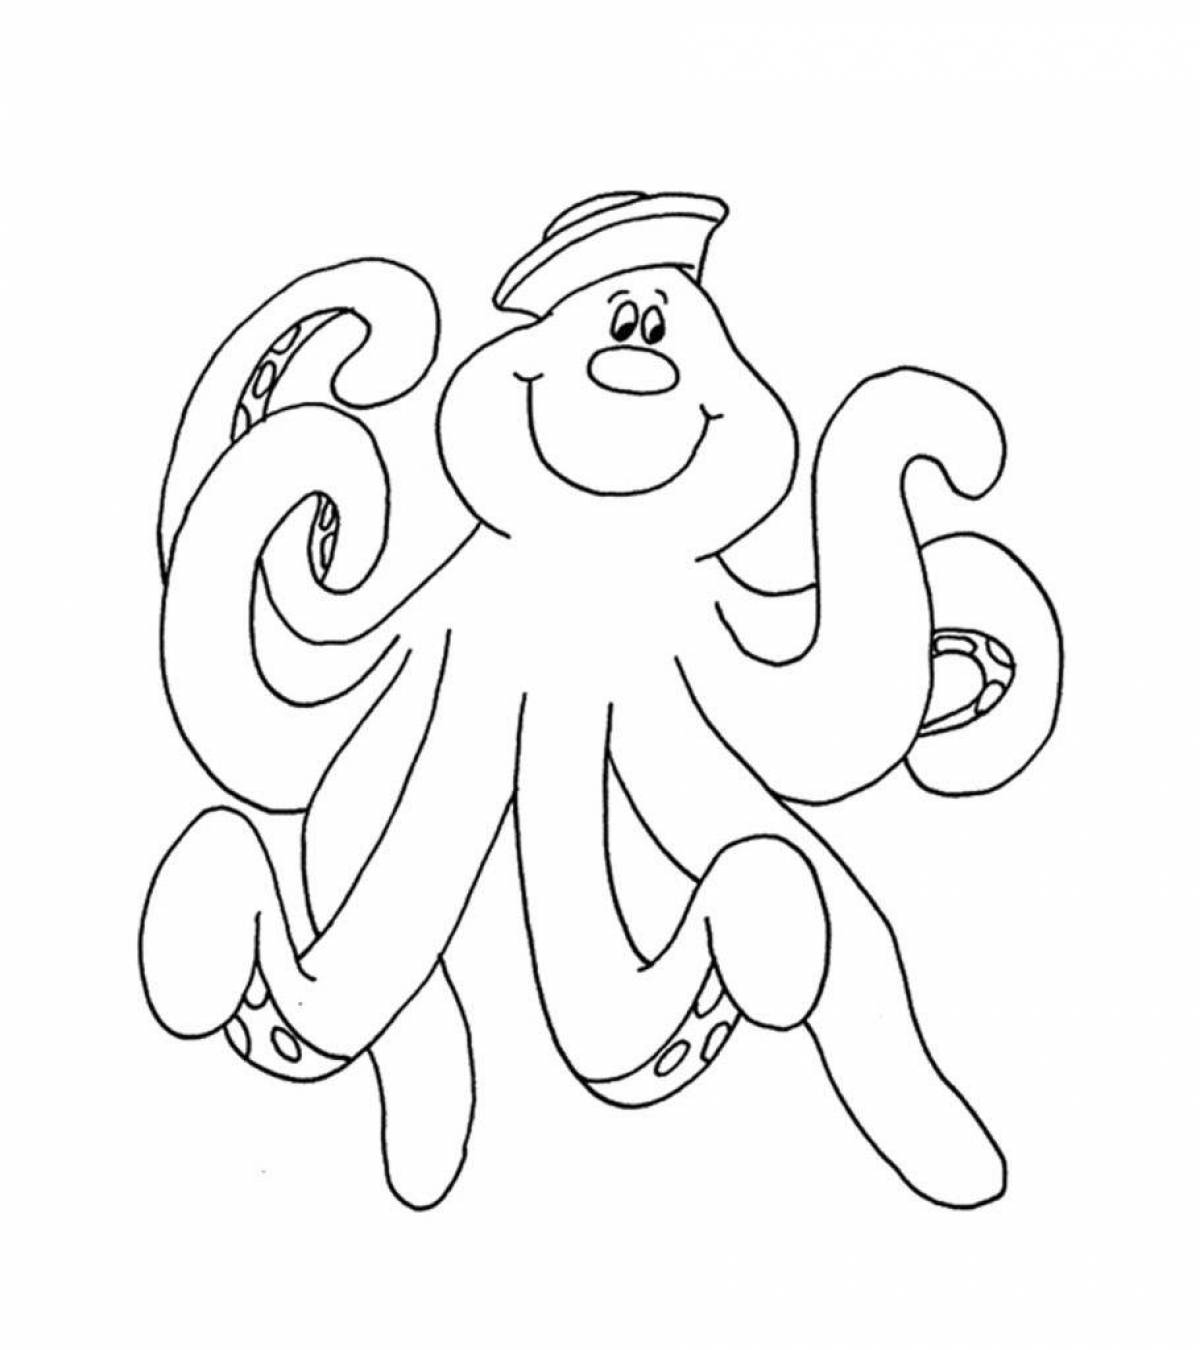 Увлекательная раскраска осьминог для детей